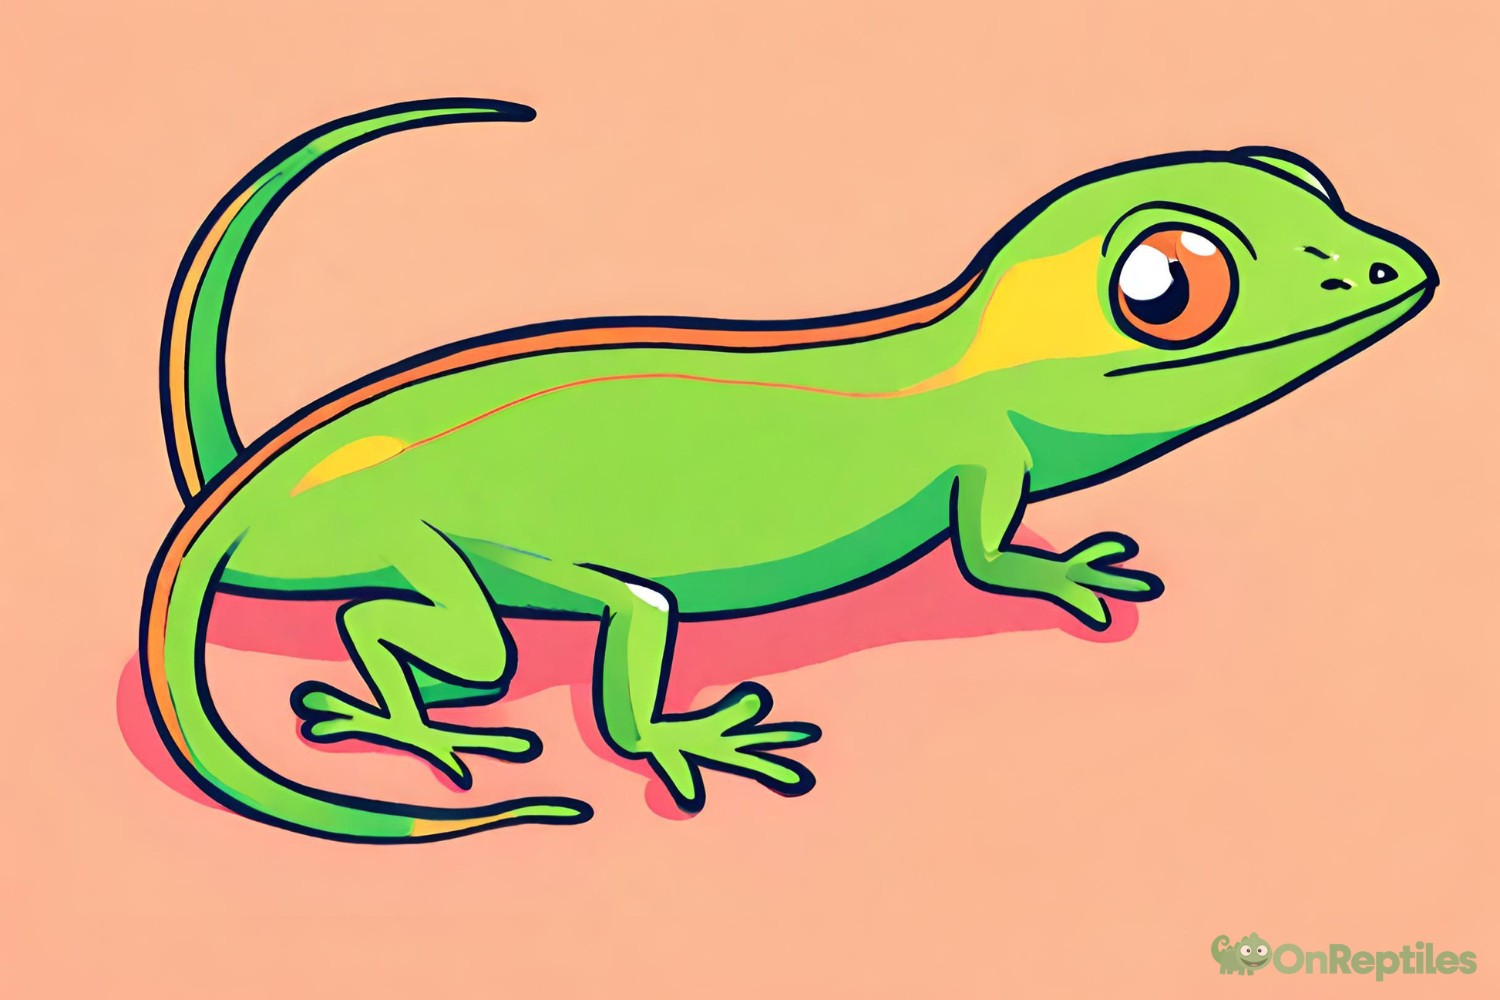 Pet Green Anole Lizard